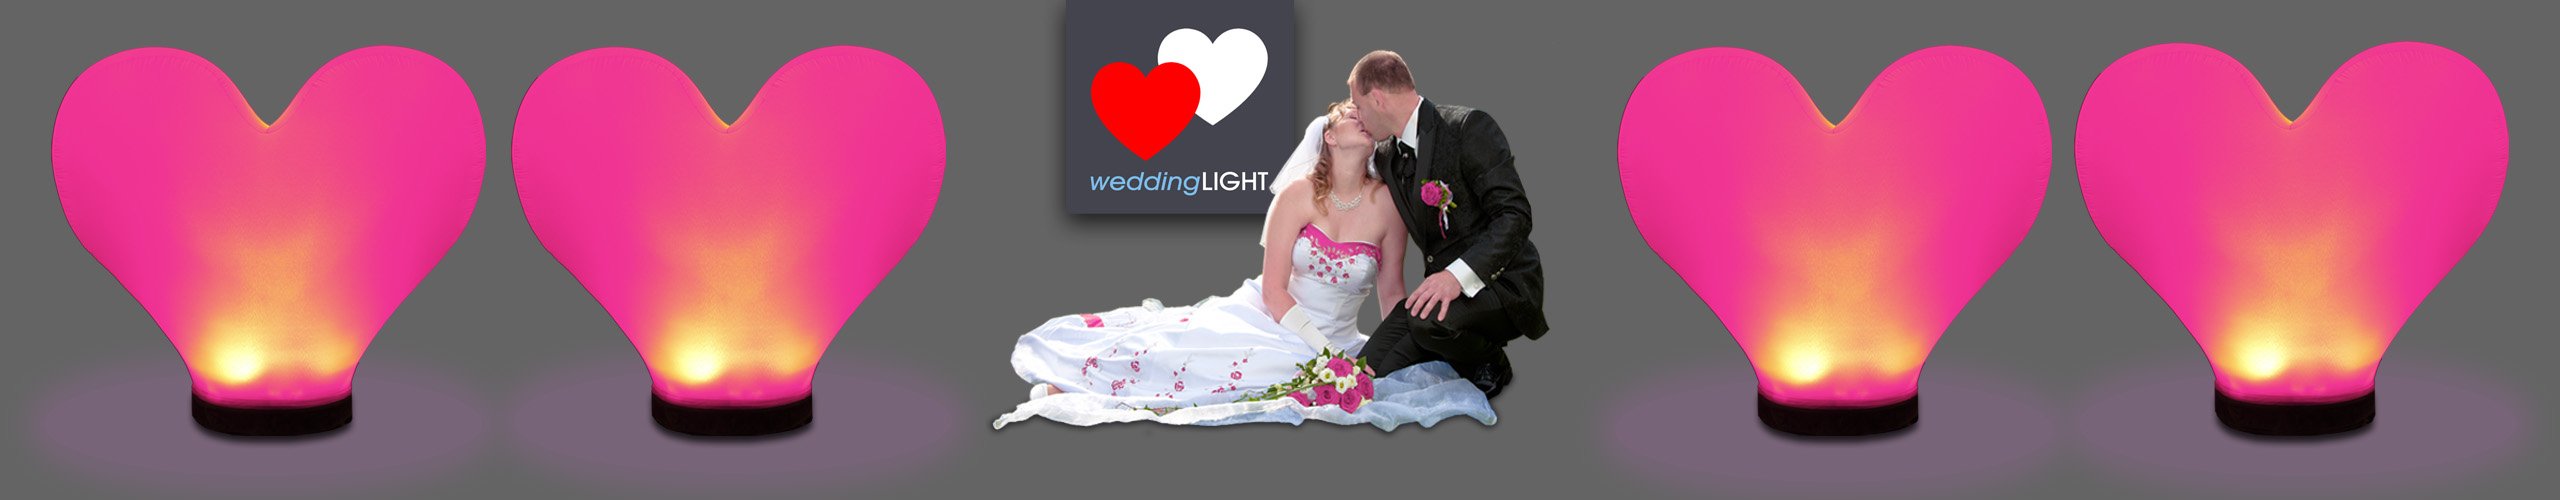 weddingLIGHT airLIGHT Hochzeitsdeko Hochzeit Banner 8